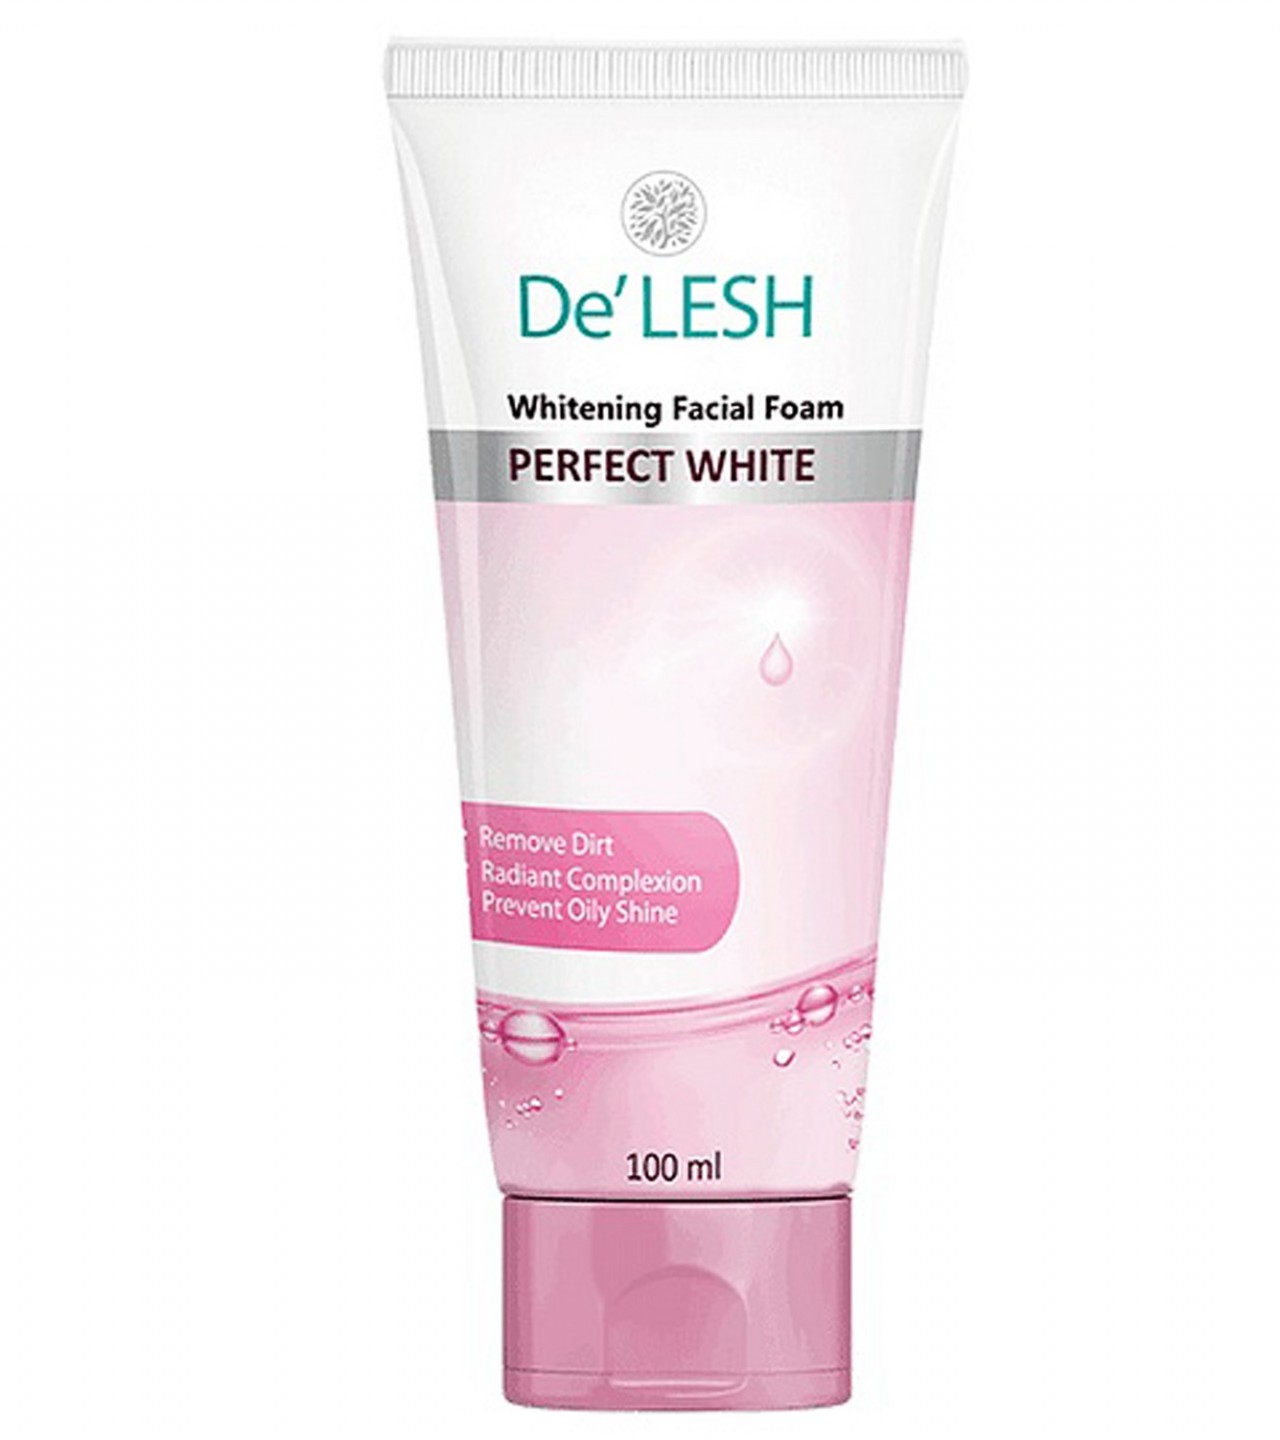 De’Lesh Whitening Facial Foam Face Wash - 100 ml